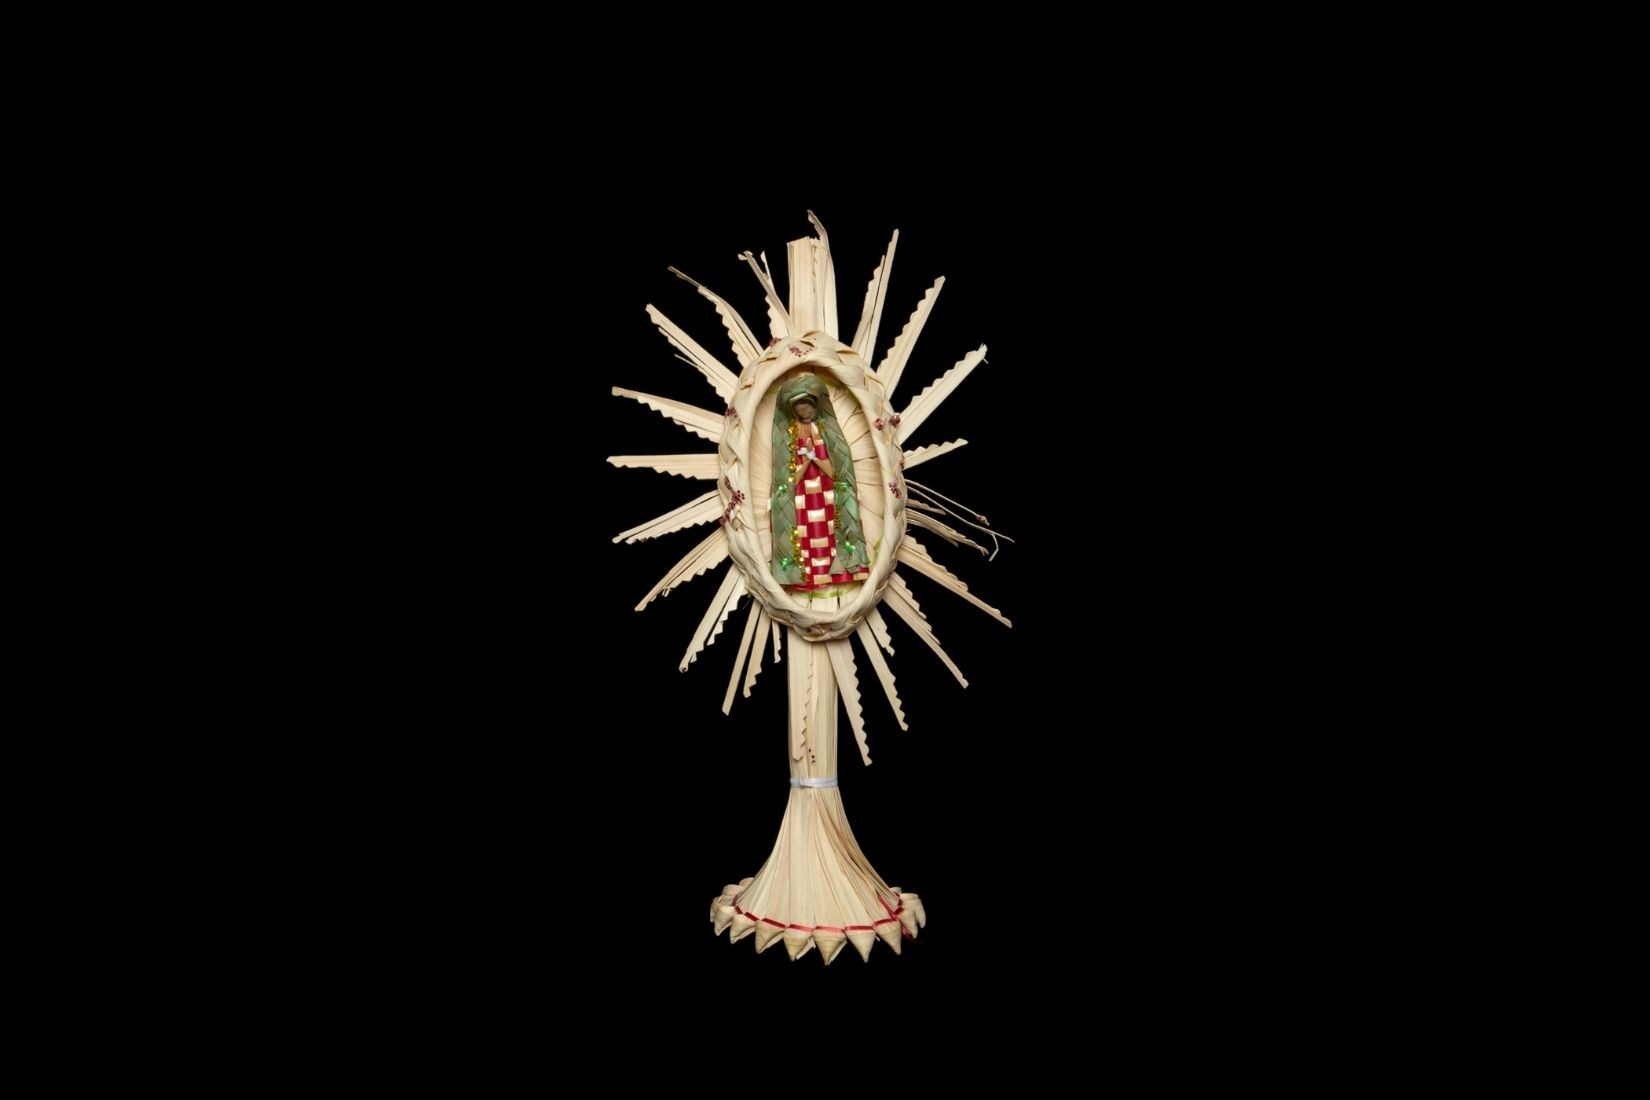 Virgen de Guadalupe de palma tejida y teñida. Artesano y procedencia desconocidos. Col. Marie Thérèse Hermand de Arango. (Foto: EKV).